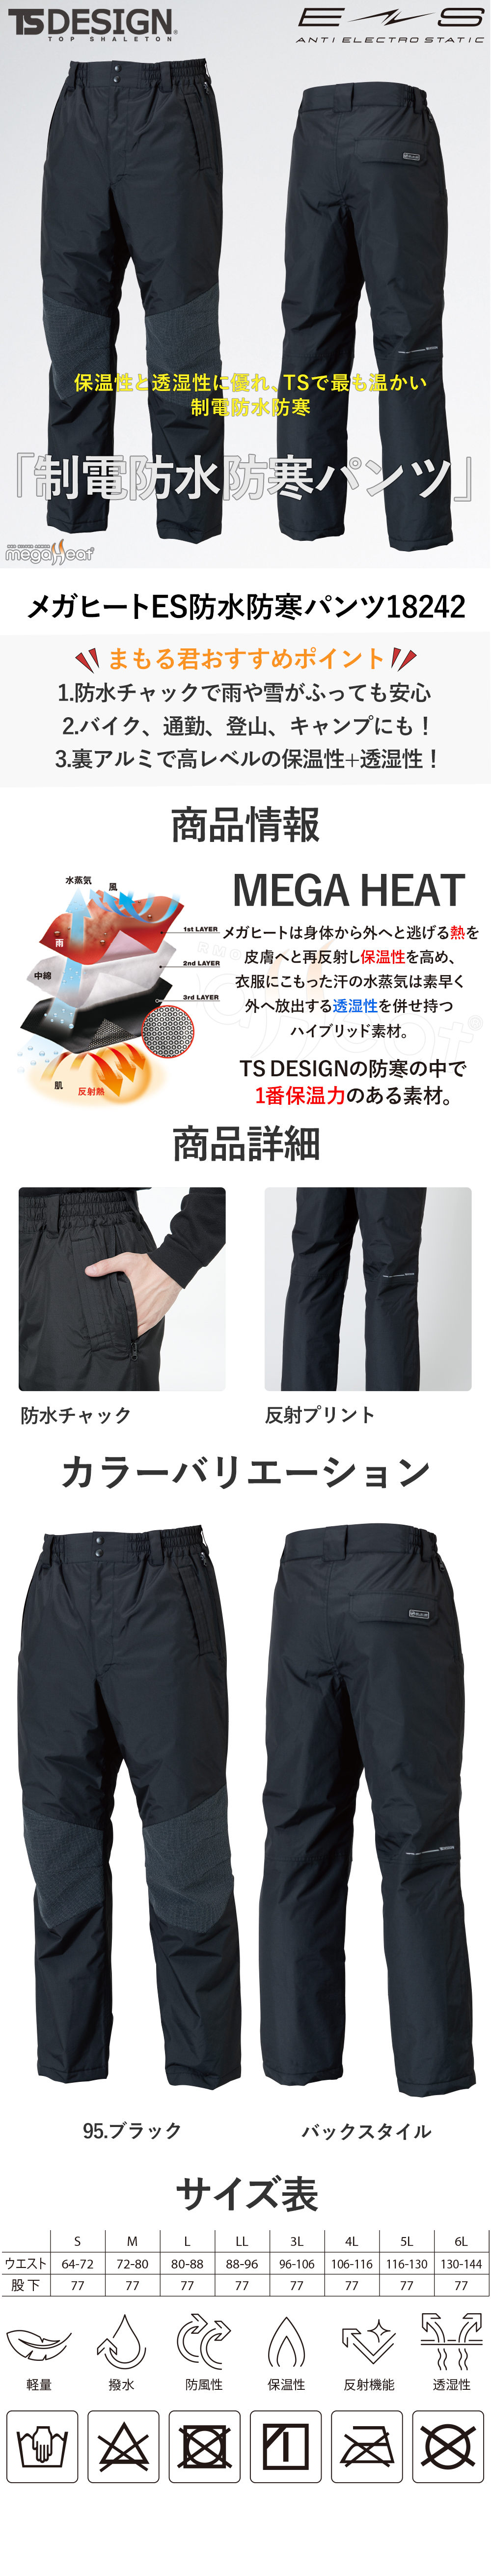 TS Design 作業着 防寒着 パンツ 防水 防寒 防寒パンツ ズボン メンズ